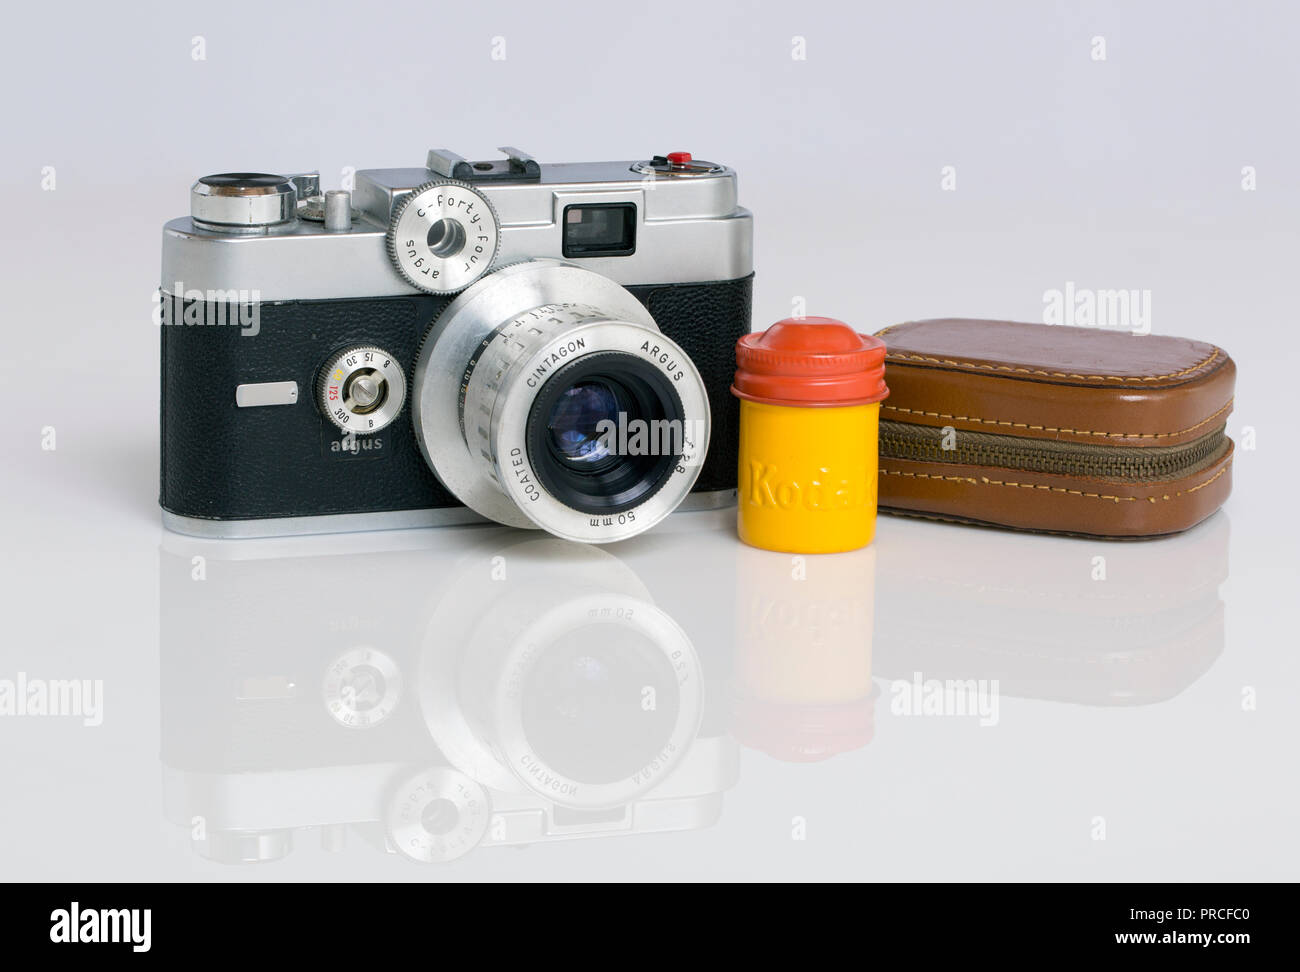 Eine amerikanische Argus C44 R35 mm Entfernungsmesser film Kamera, Kodak Kanister Farbe für Kodachrome Film kodiert, und ein Belichtungsmesser in einem Lederetui. T Stockfoto